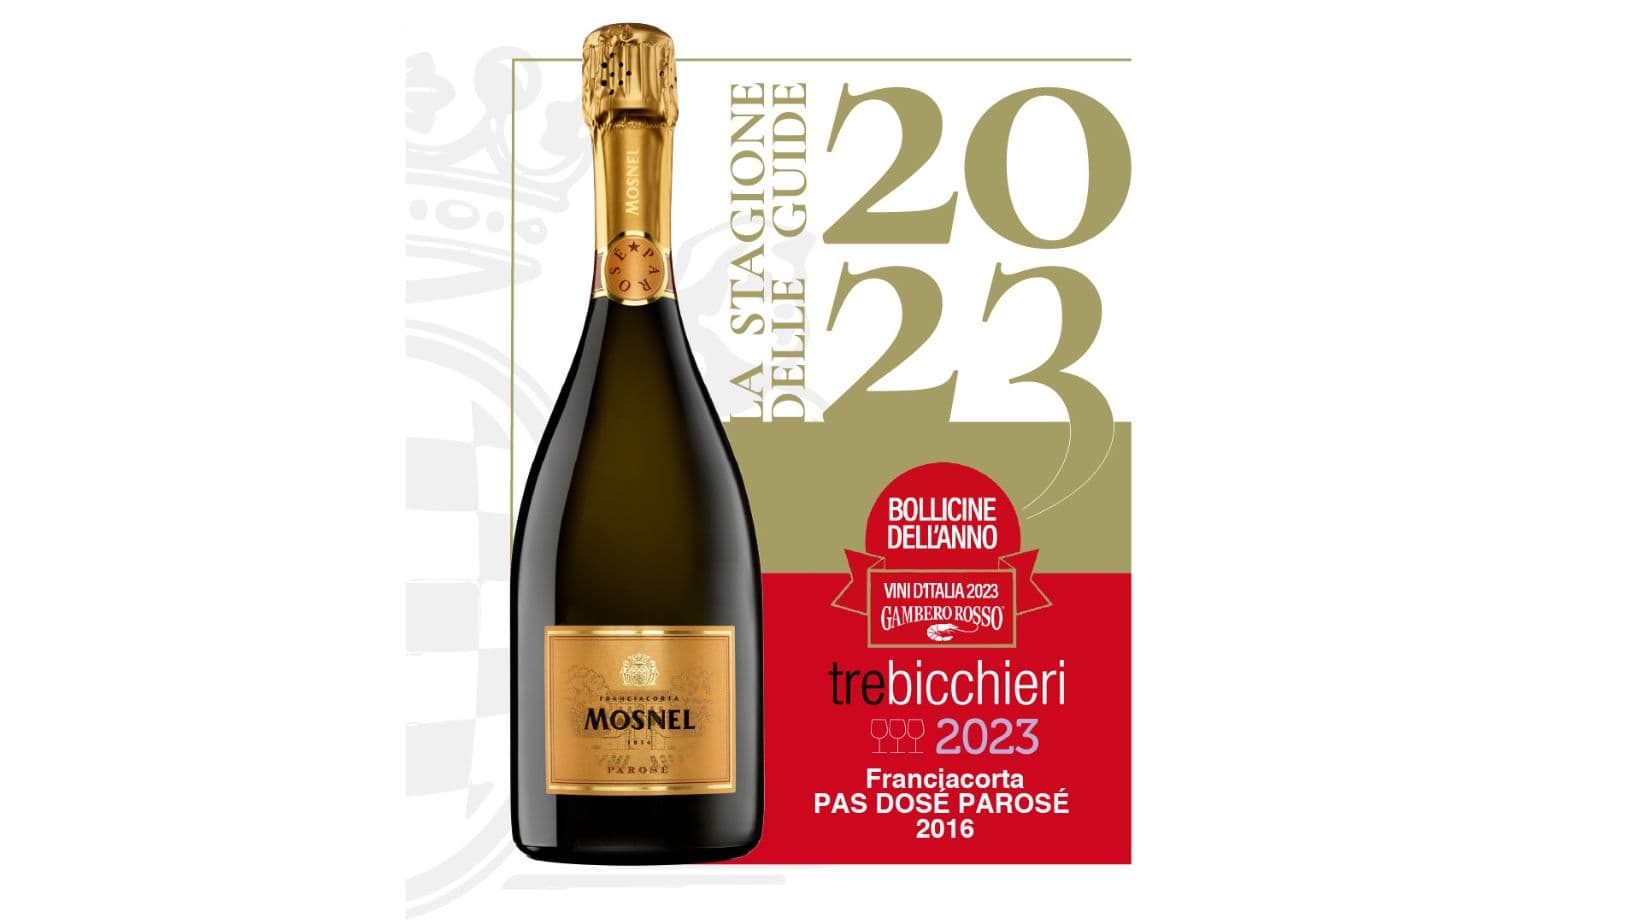 Franciacorta Pas Dosè Parosè 2016 premiato con i “3 Bicchieri” del Gambero Rosso, oltre che “Bollicine dell’anno”.